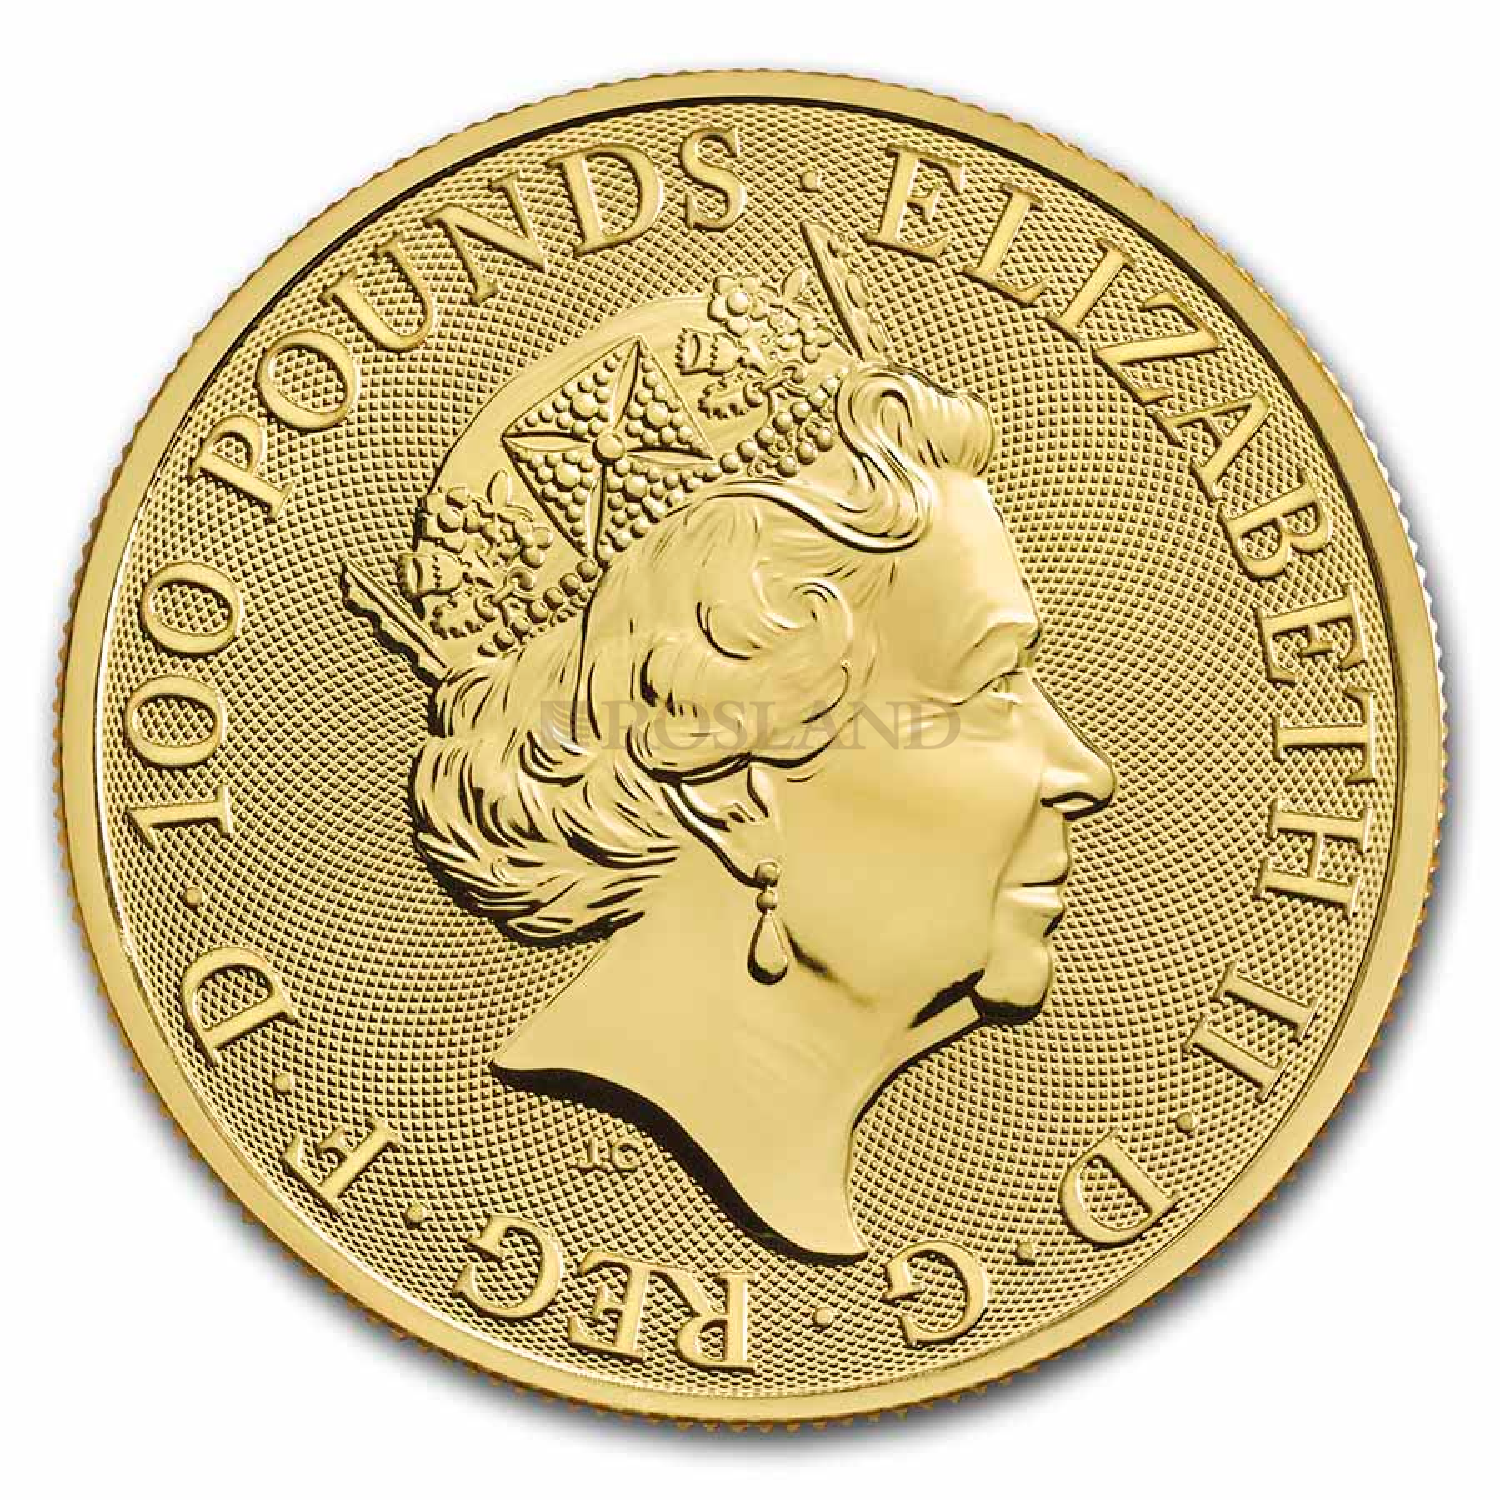 1 Unze Goldmünze Queens Beasts Completer Coin 2021 